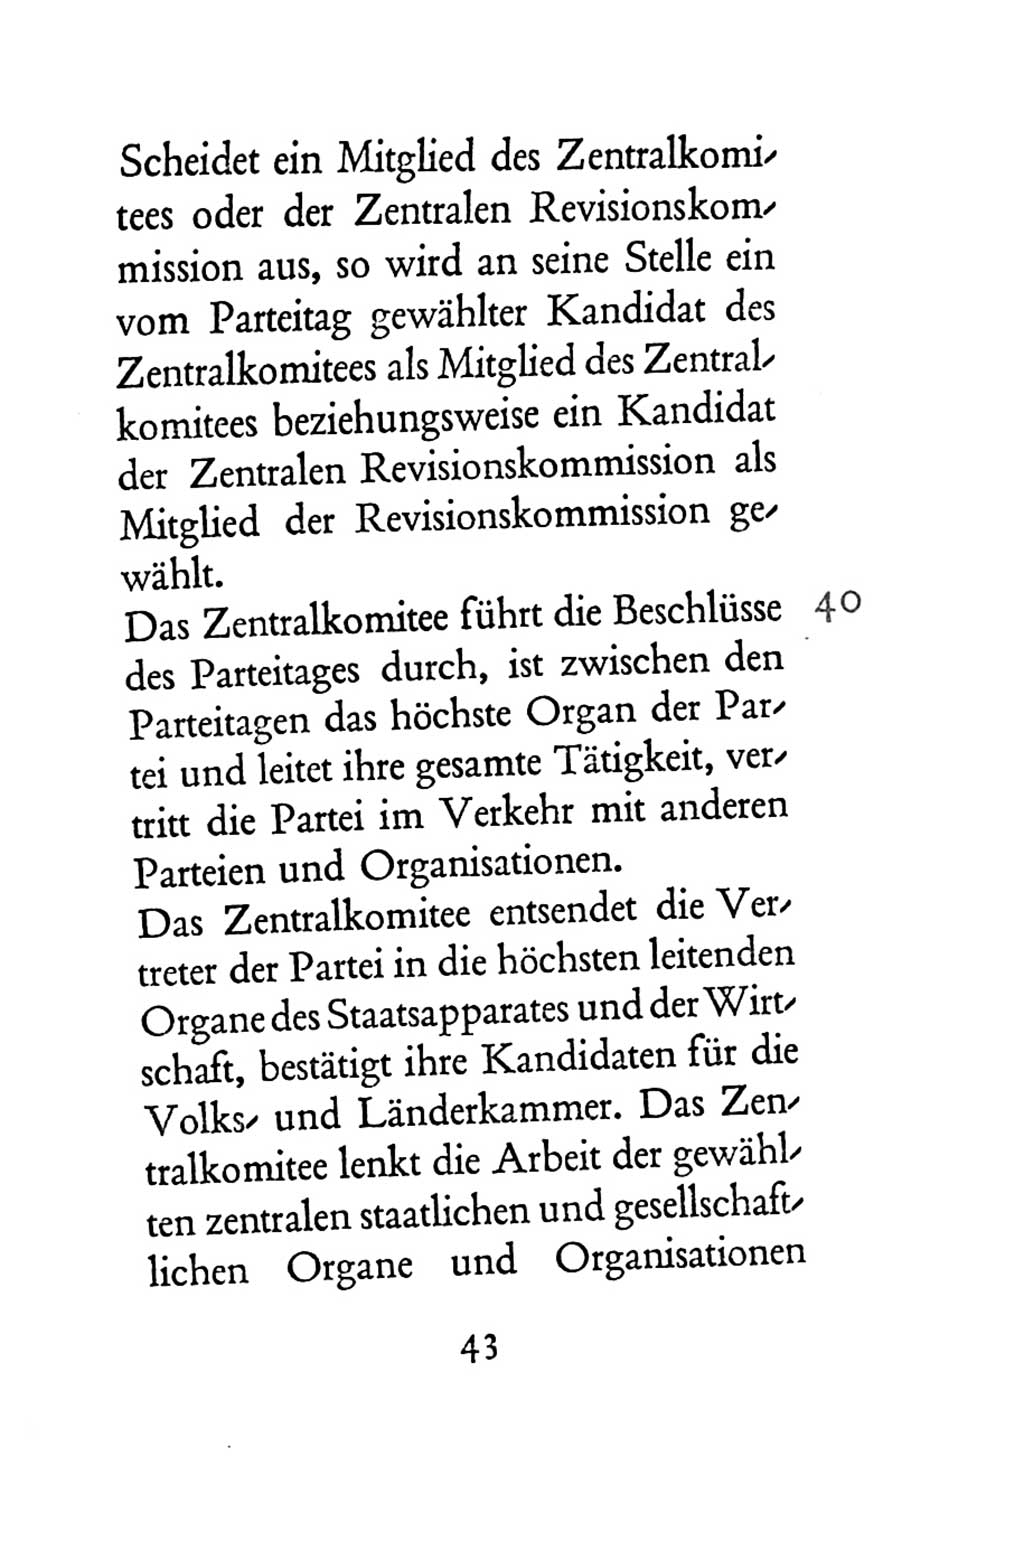 Statut der Sozialistischen Einheitspartei Deutschlands (SED) 1954, Seite 43